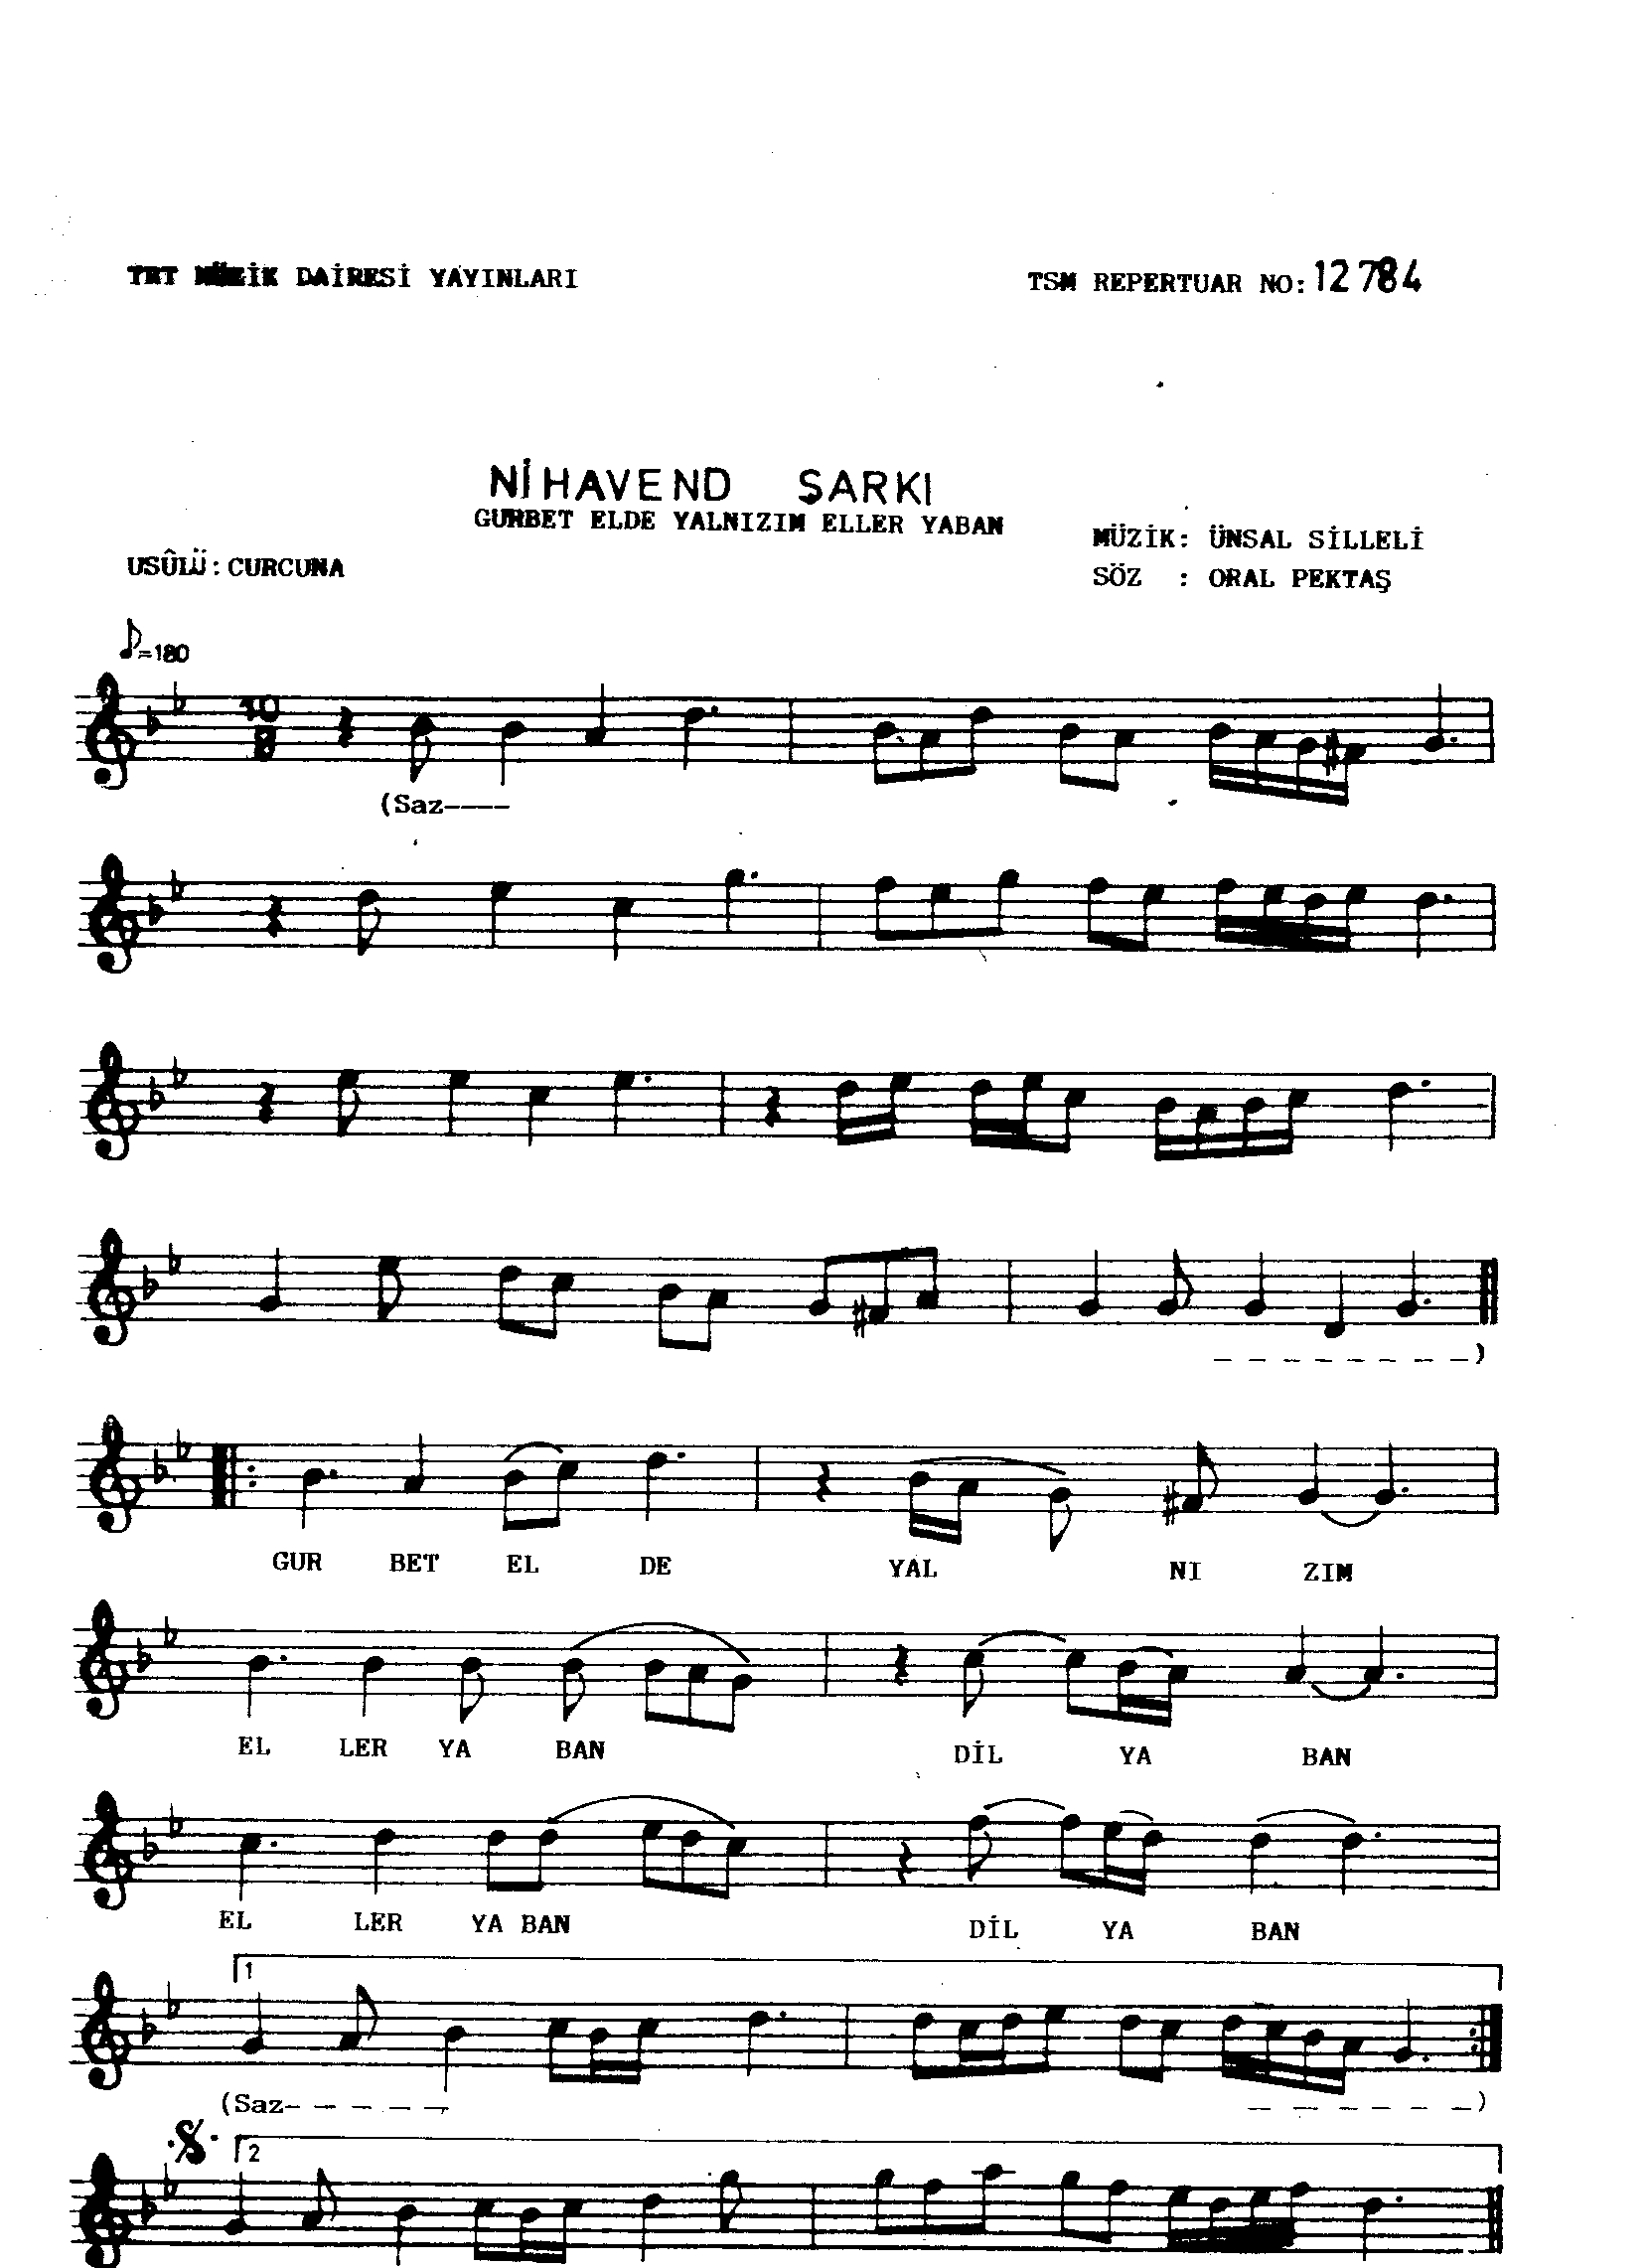 Nihâvend - Şarkı - Ünsal Silleli - Sayfa 1